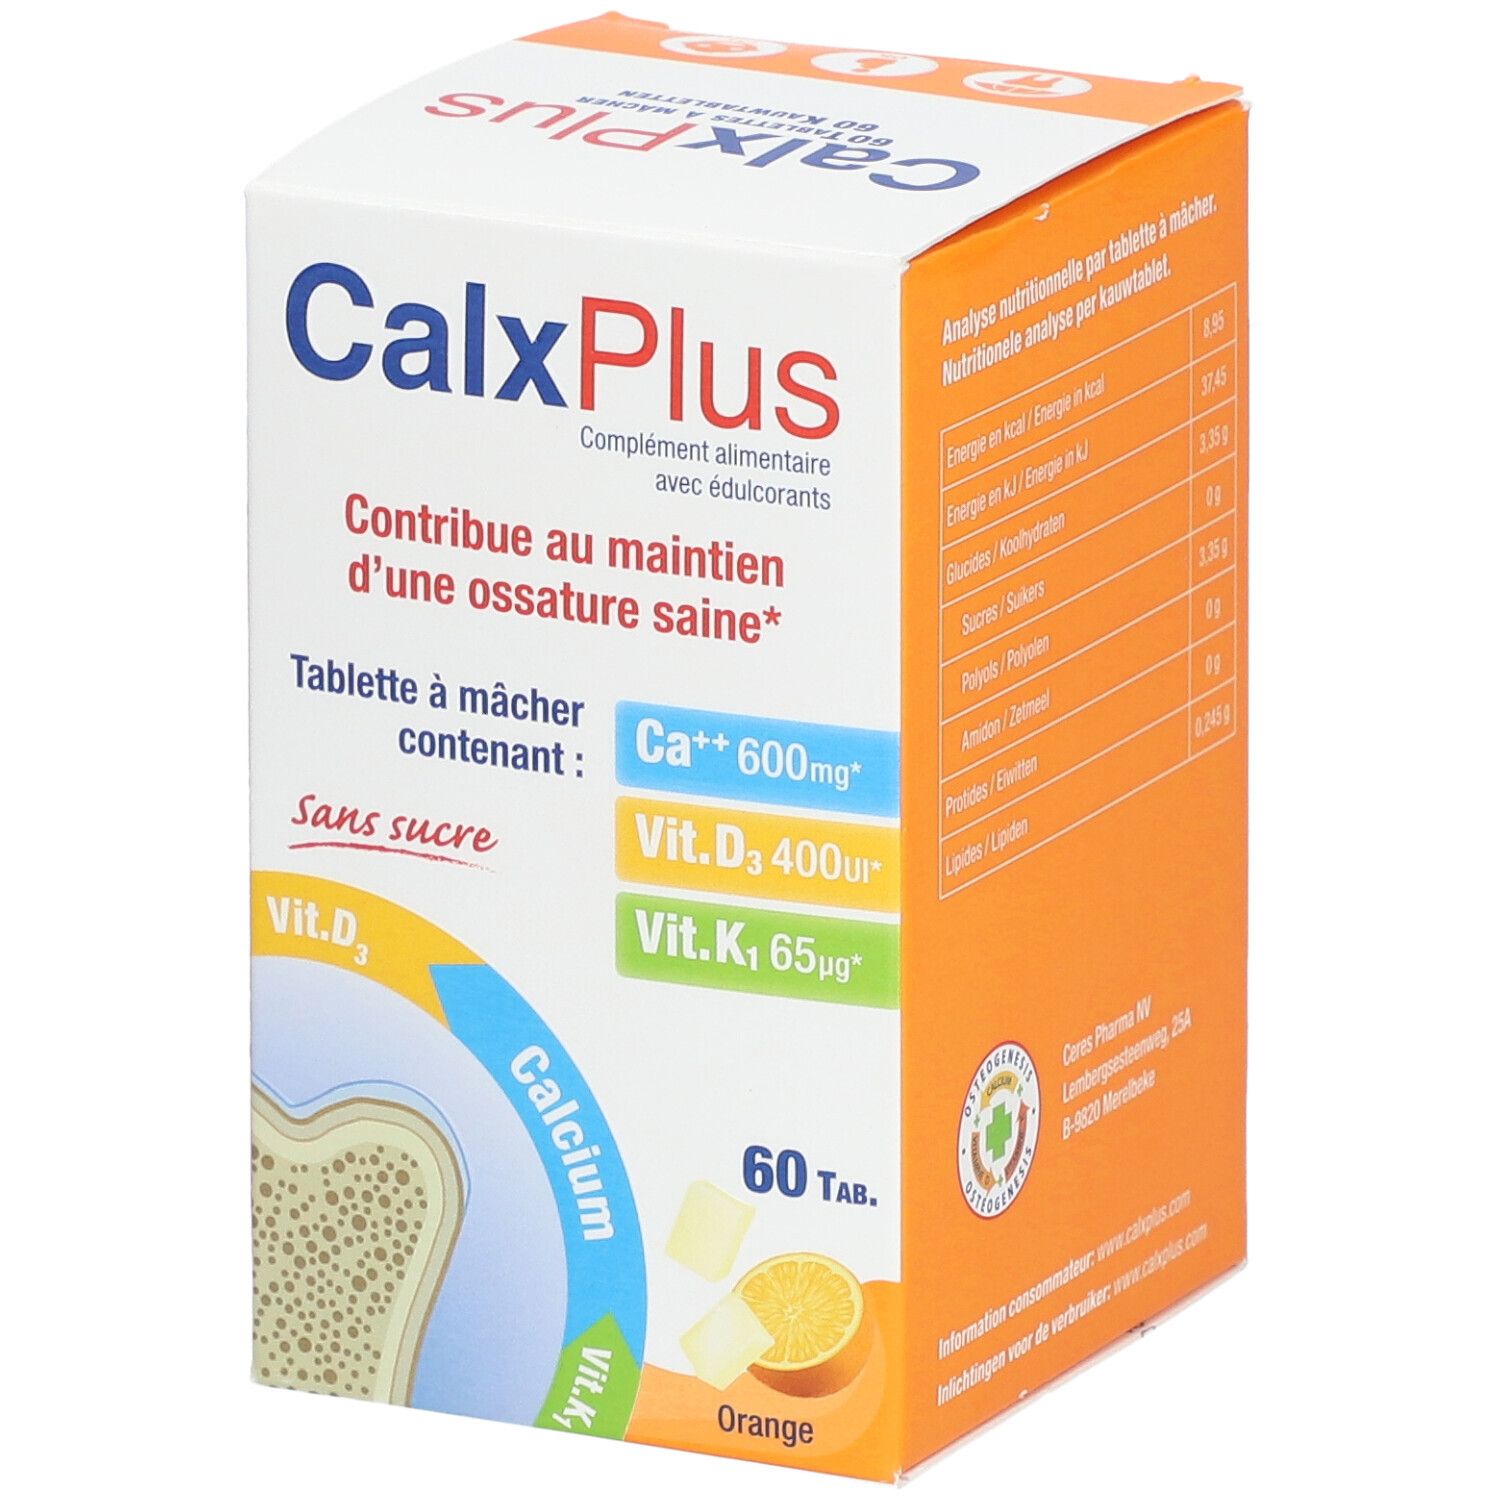 CalxPlus